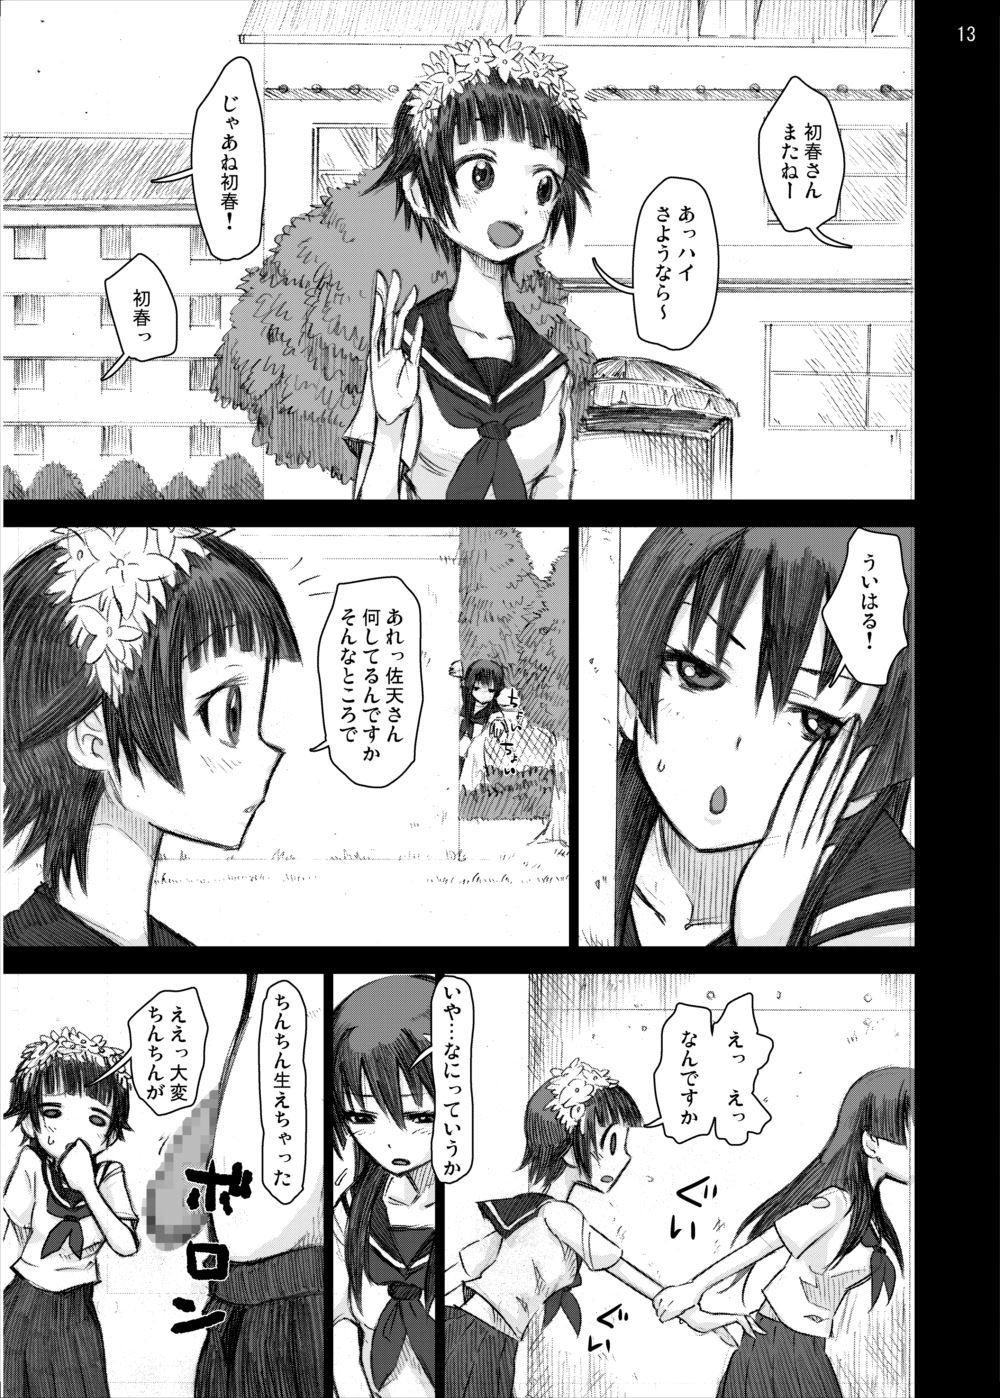 Passion Ryoujoku Jigoku 4 - Futanari Stalker Rape... - Toaru kagaku no railgun Hot Pussy - Page 12